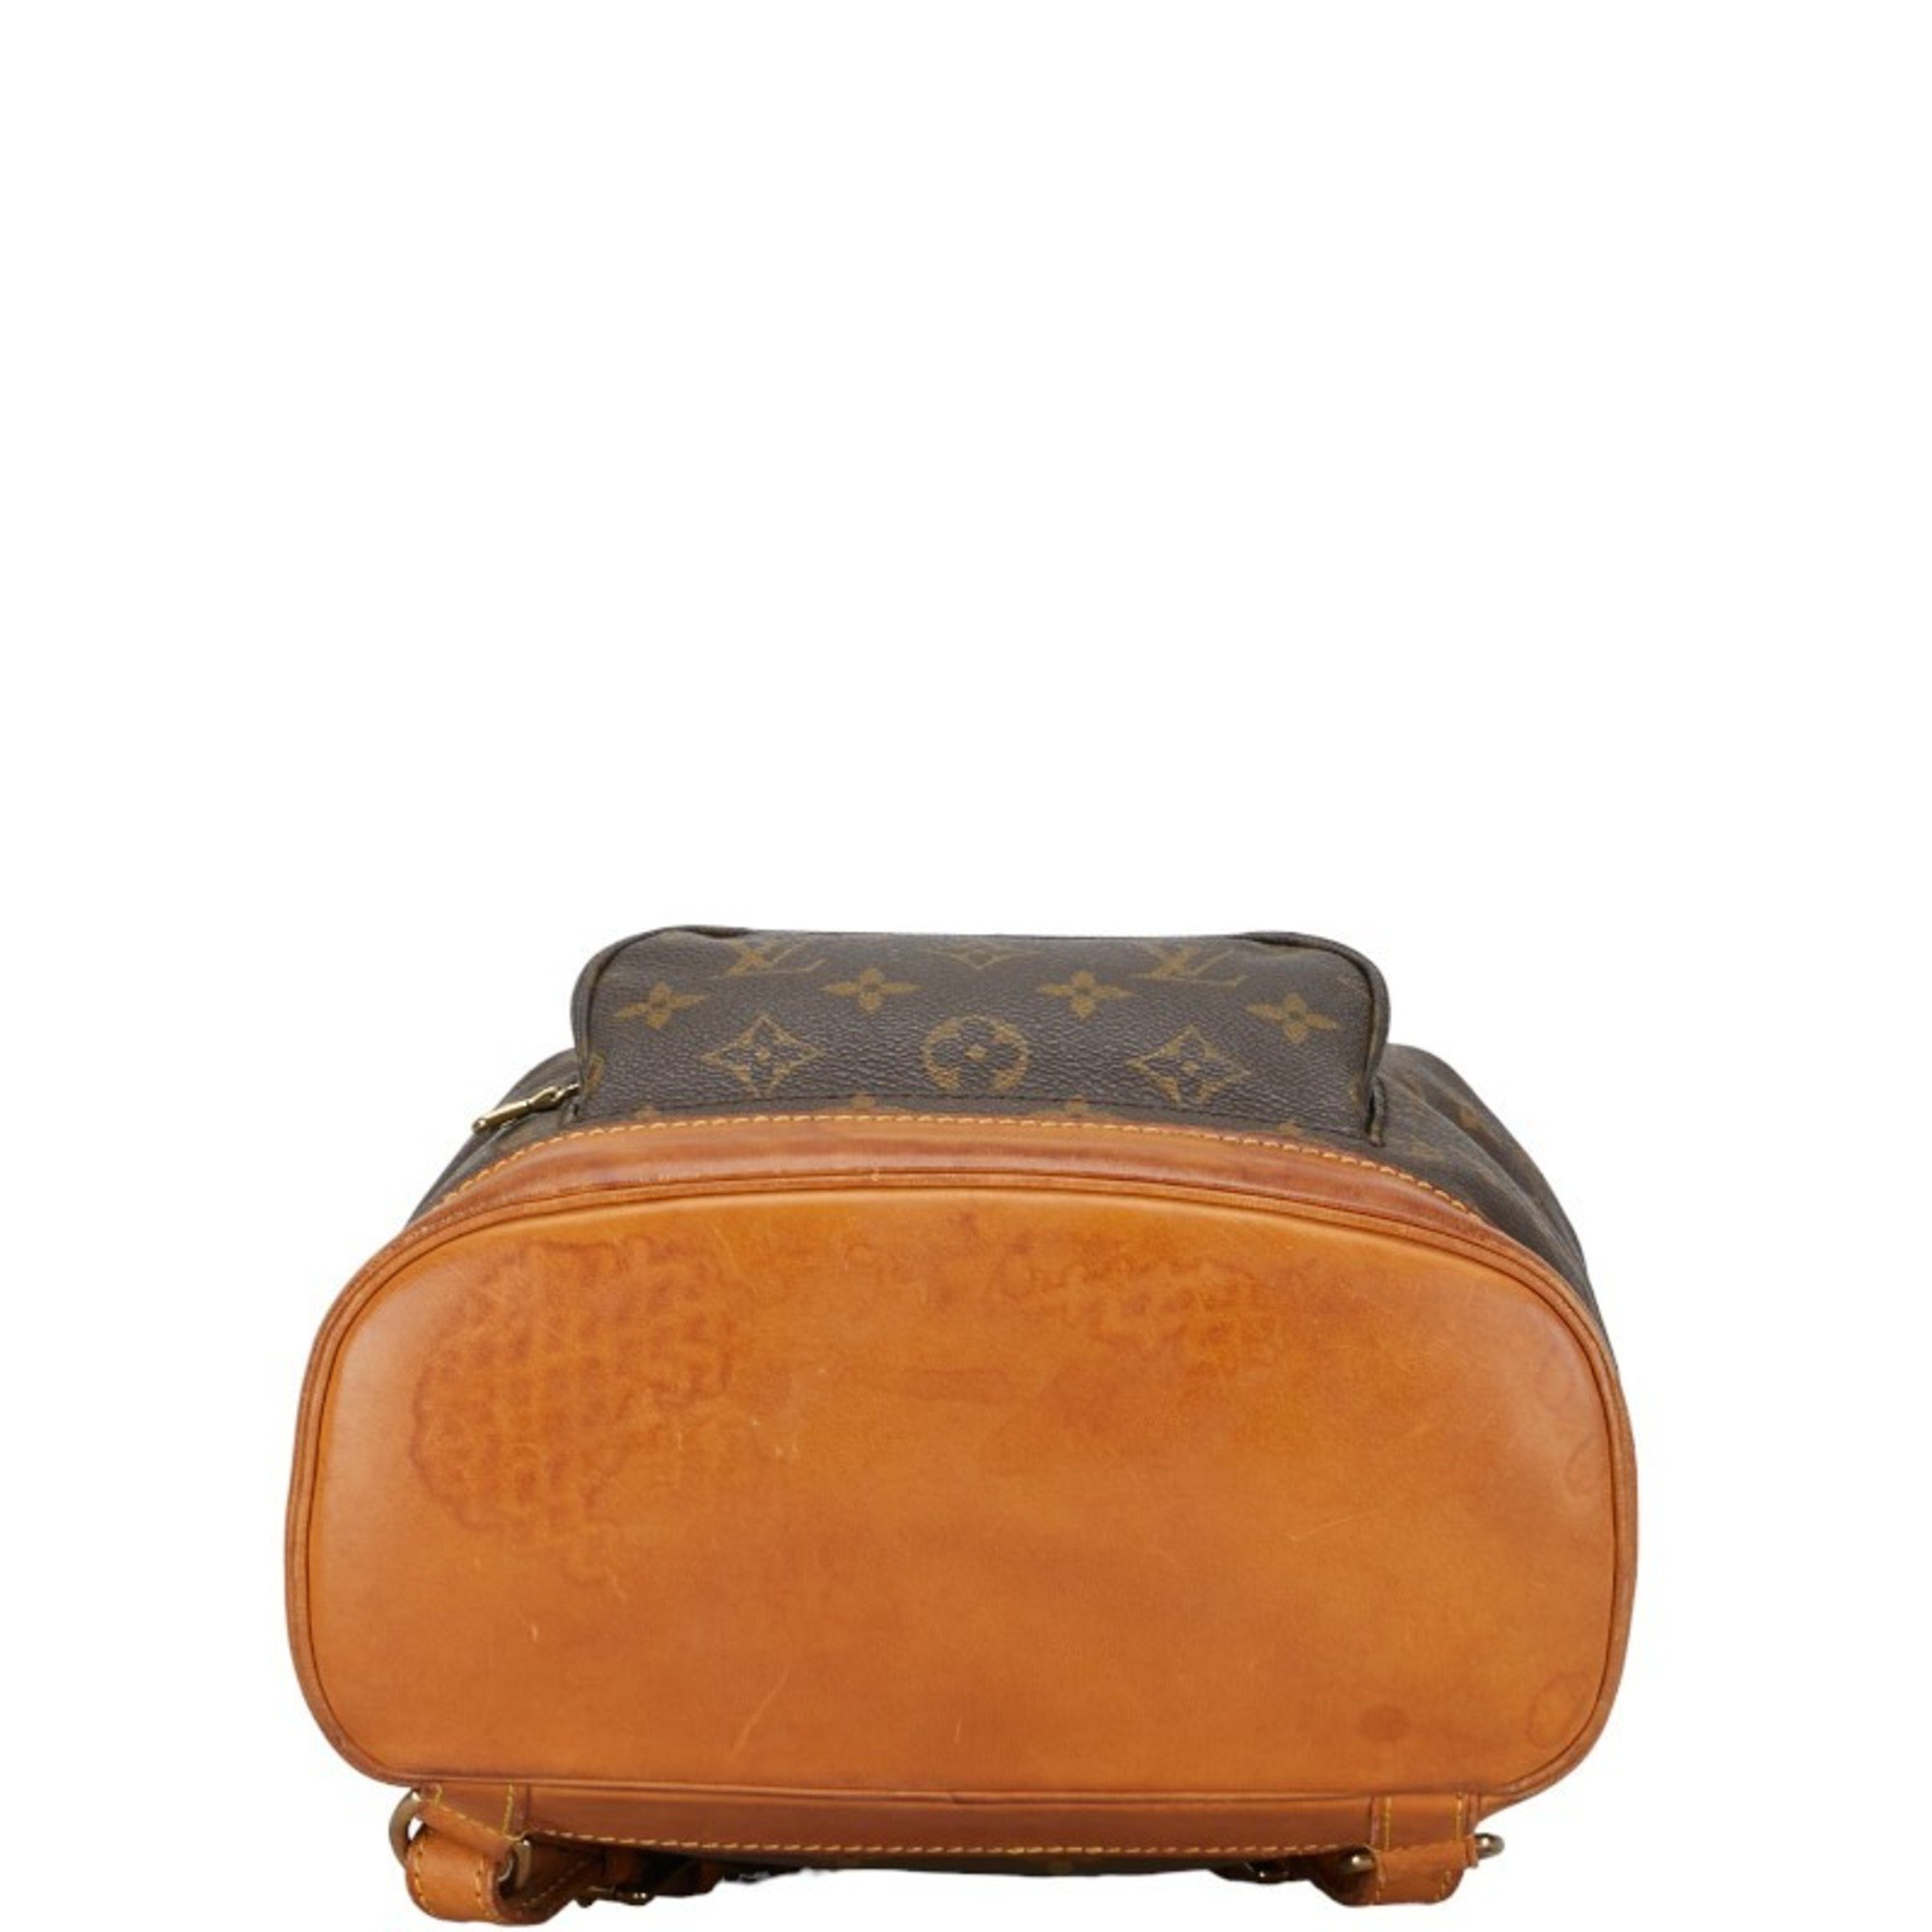 Louis Vuitton Monogram Montsouris MM Backpack M51136 Brown PVC Leather Women's LOUIS VUITTON